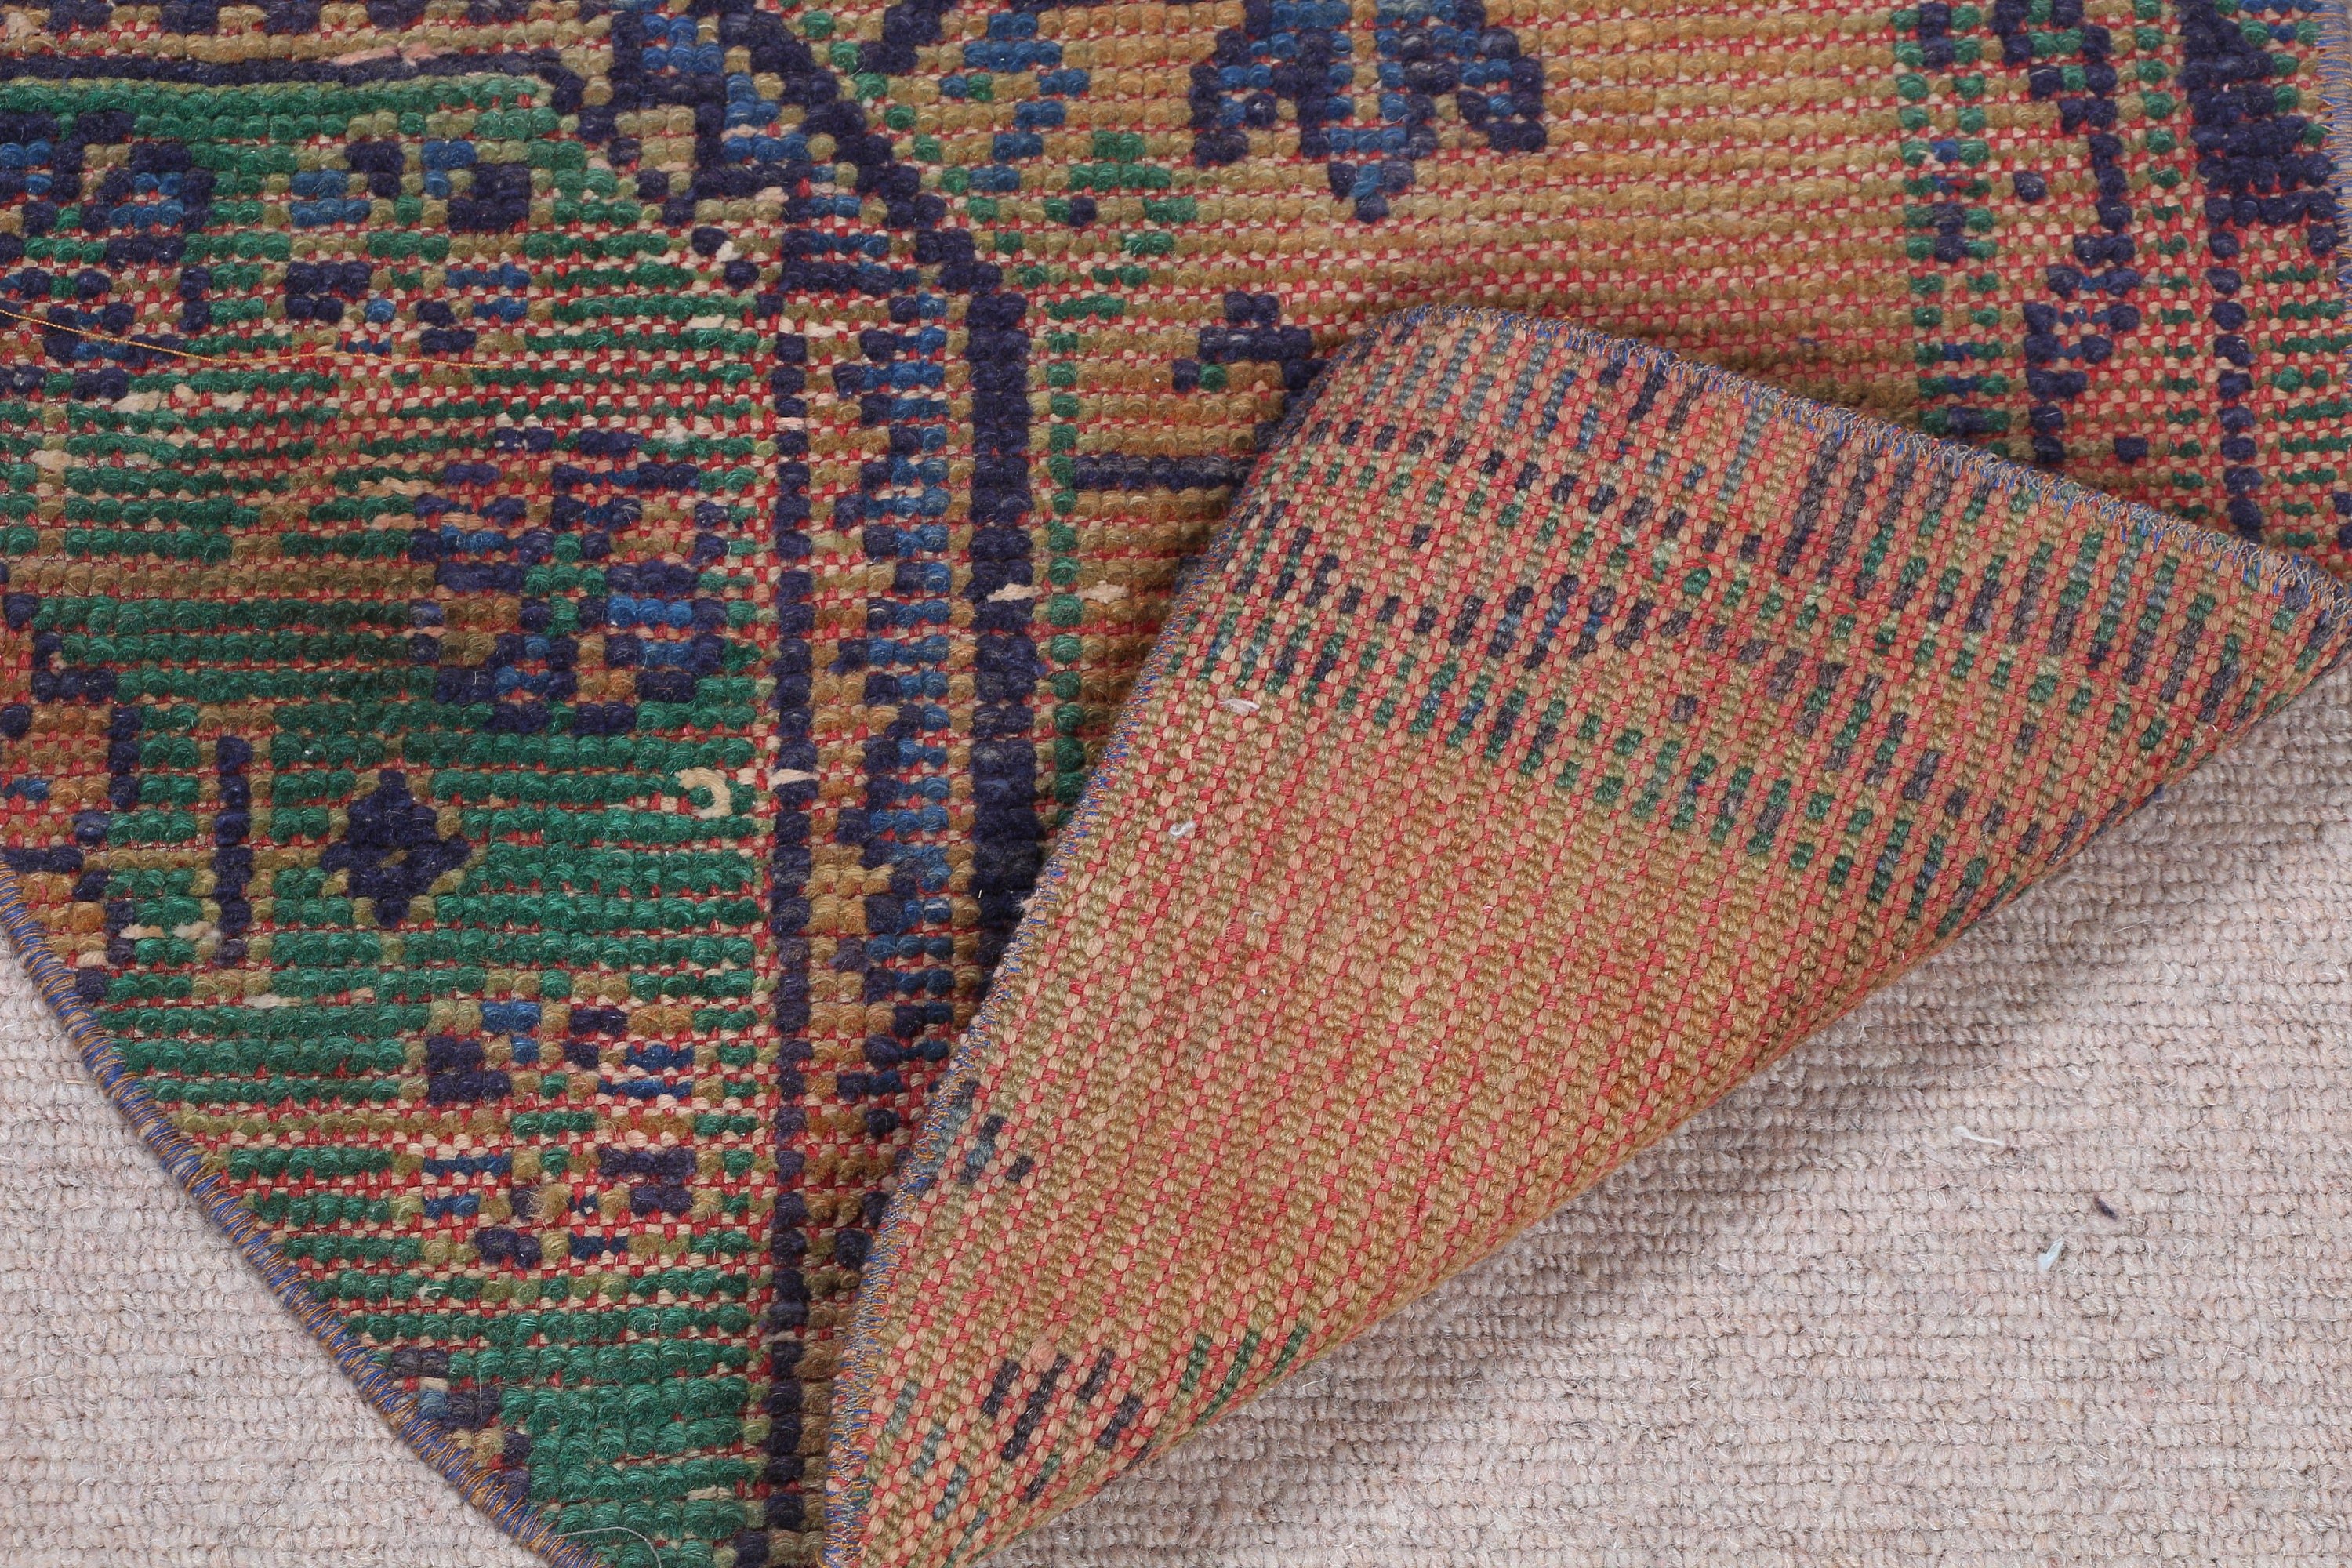 Hand Woven Rug, Kitchen Rug, Door Mat Rug, Turkish Rugs, Green Moroccan Rug, Wool Rug, Wall Hanging Rug, Vintage Rug, 2.5x1.5 ft Small Rug